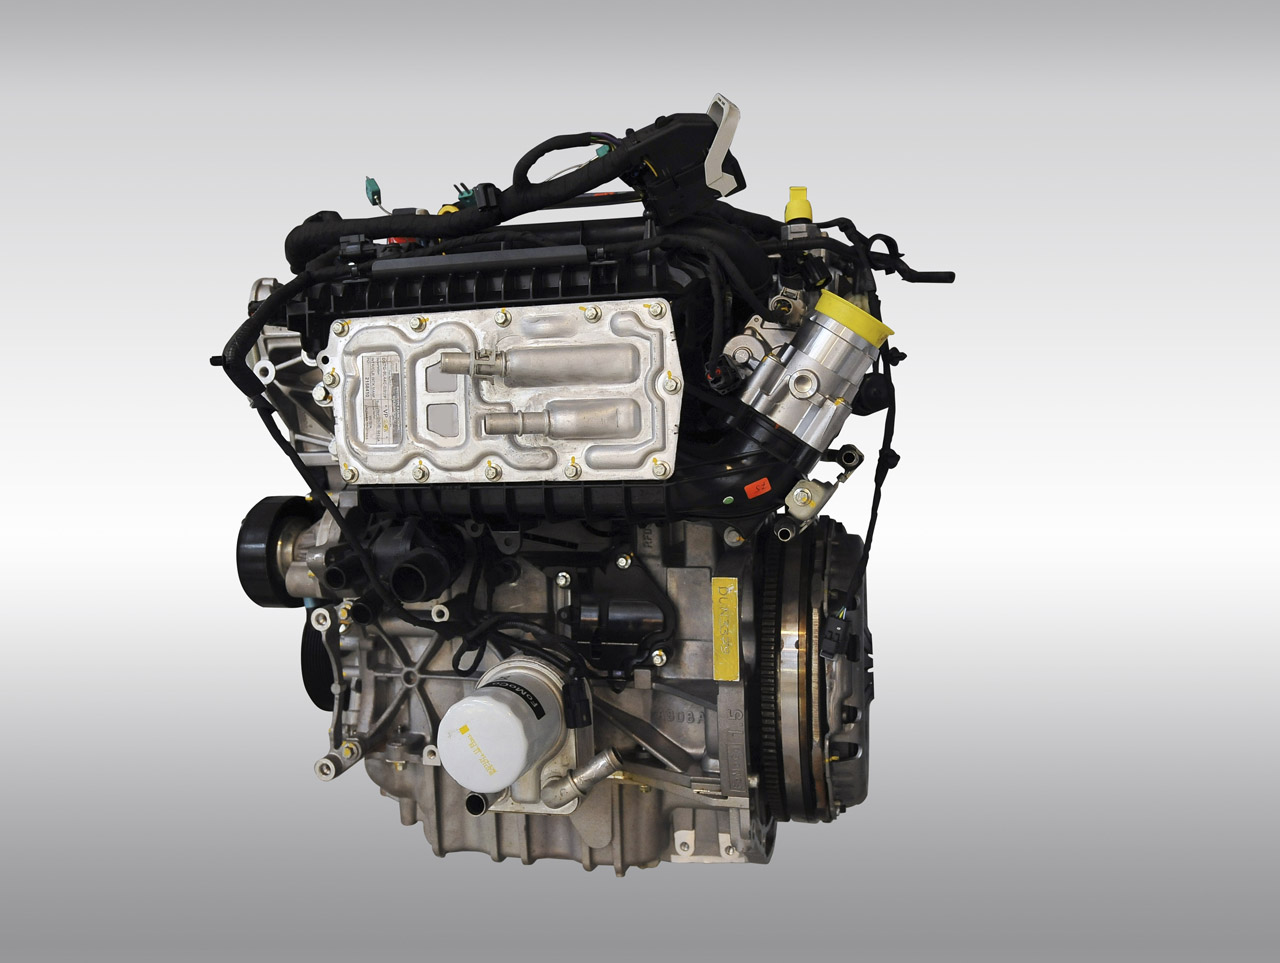  Gambar Mesin Mobil  Ford 4 Silinder Terbaru MOTOGILA